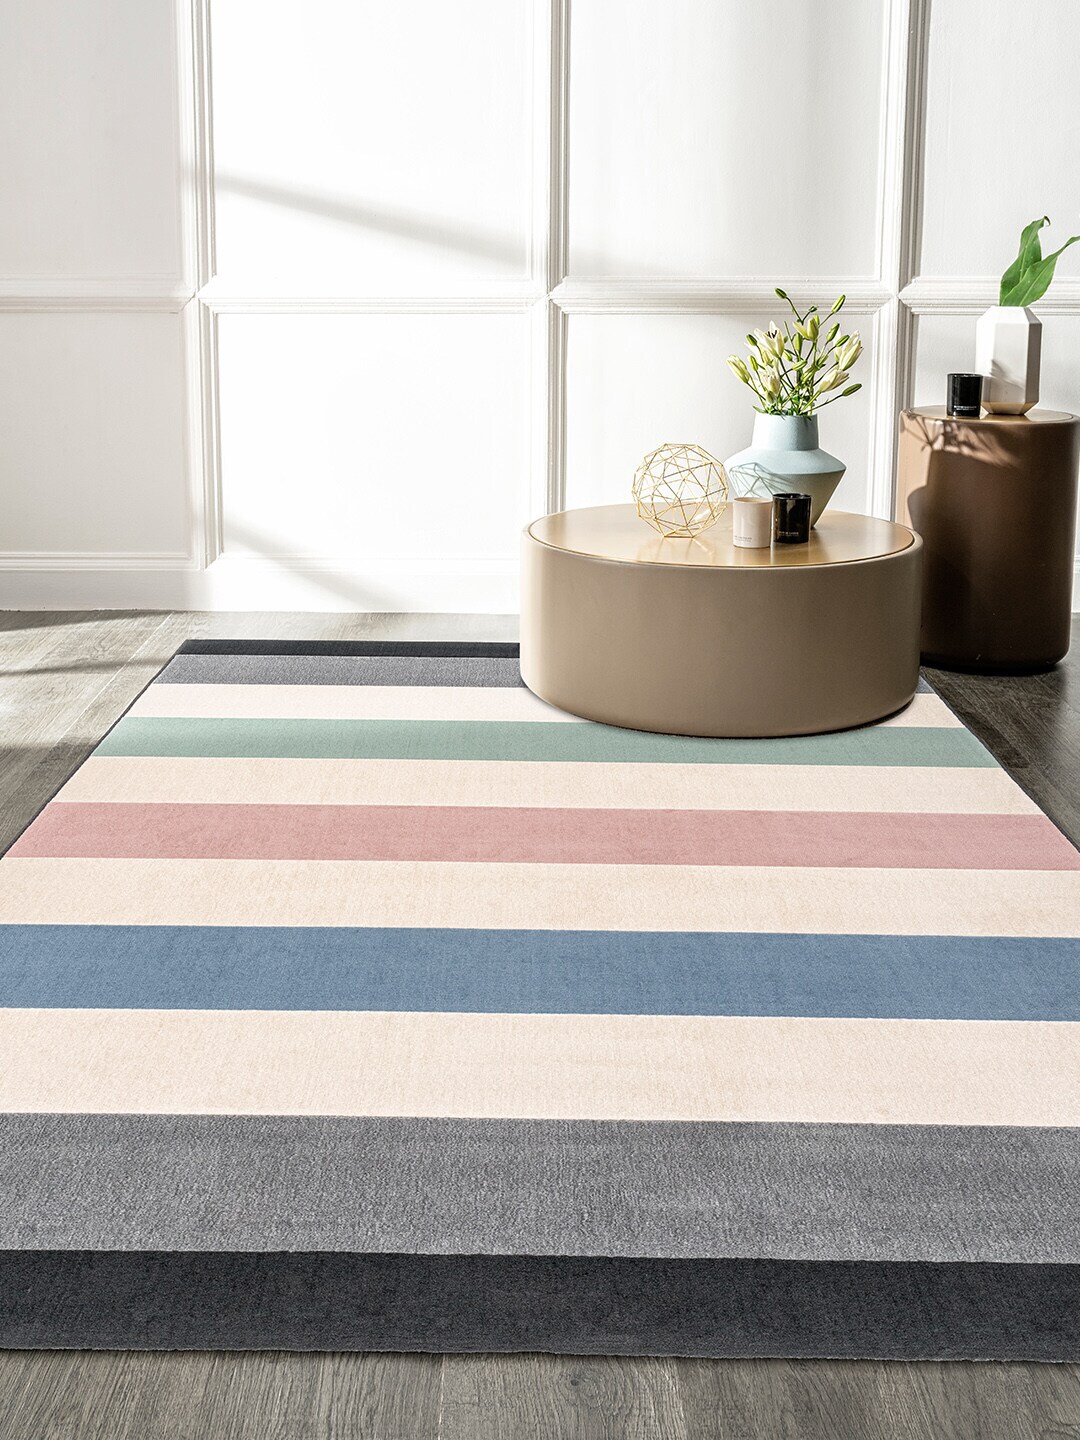 DDecor Multicoloured Striped Carpet Price in India